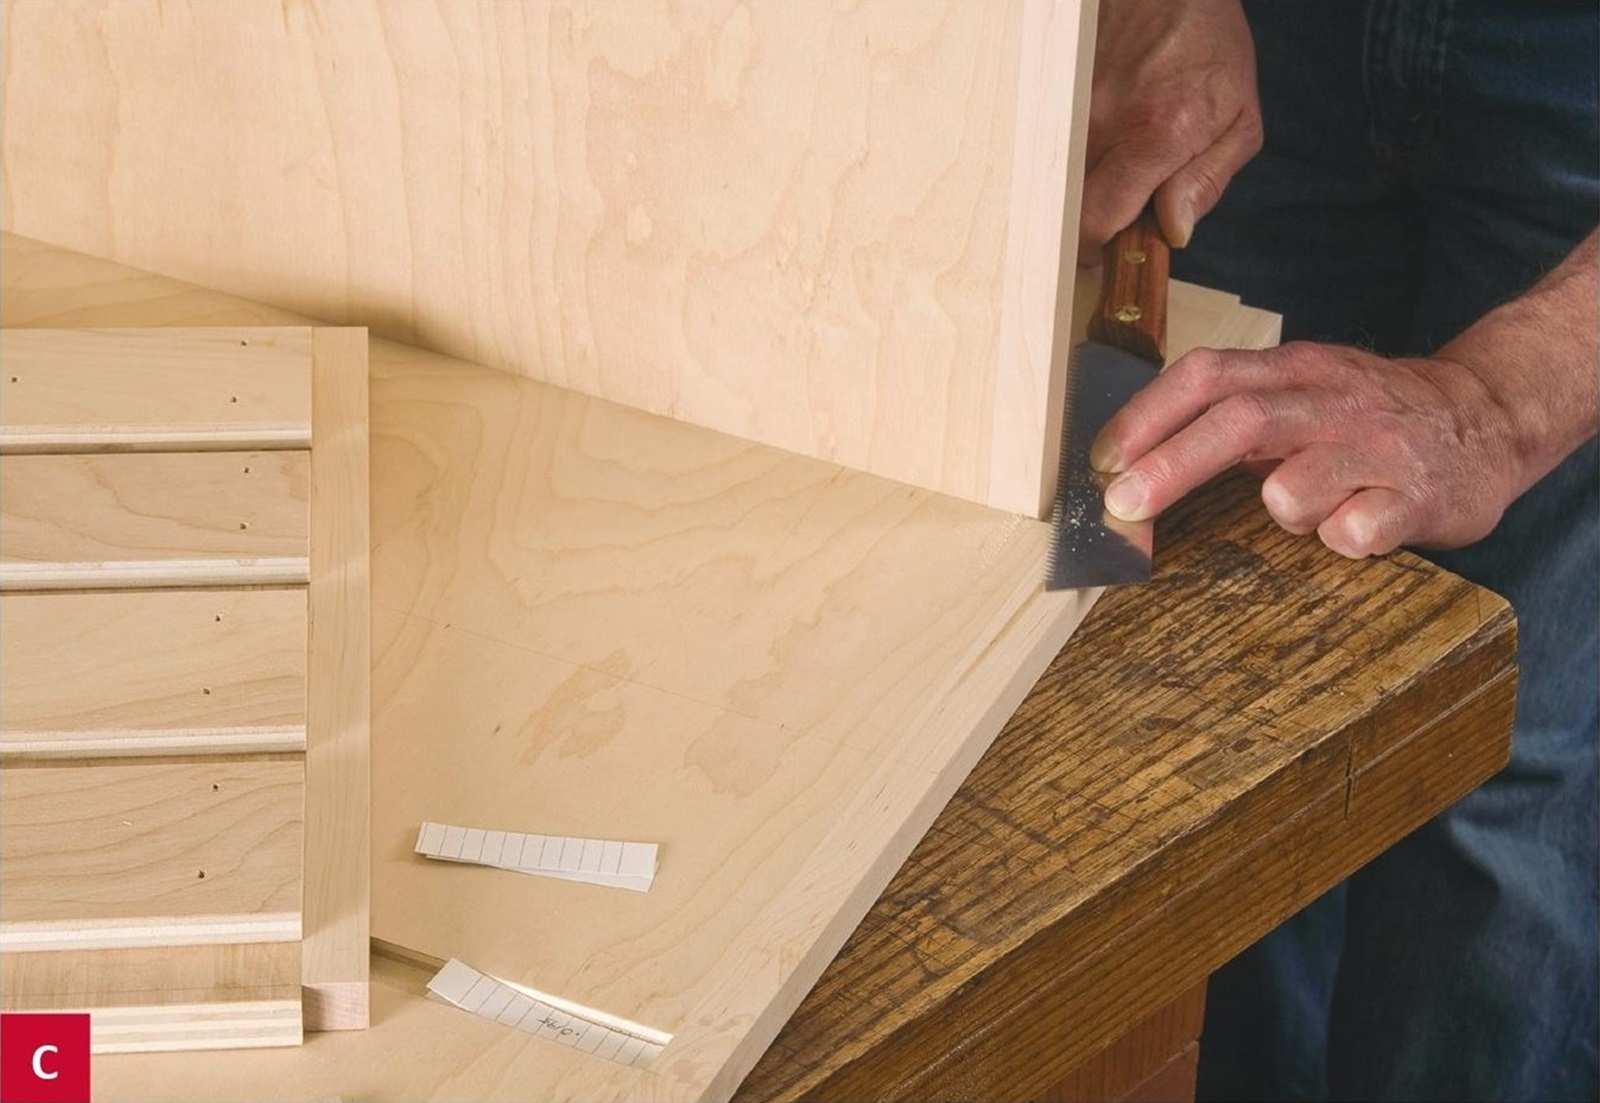 Đặt ván gỗ C vào trong rãnh Dado của ván gỗ A, sau đó dùng cưa tay để cắt phần viền ngoài đi.